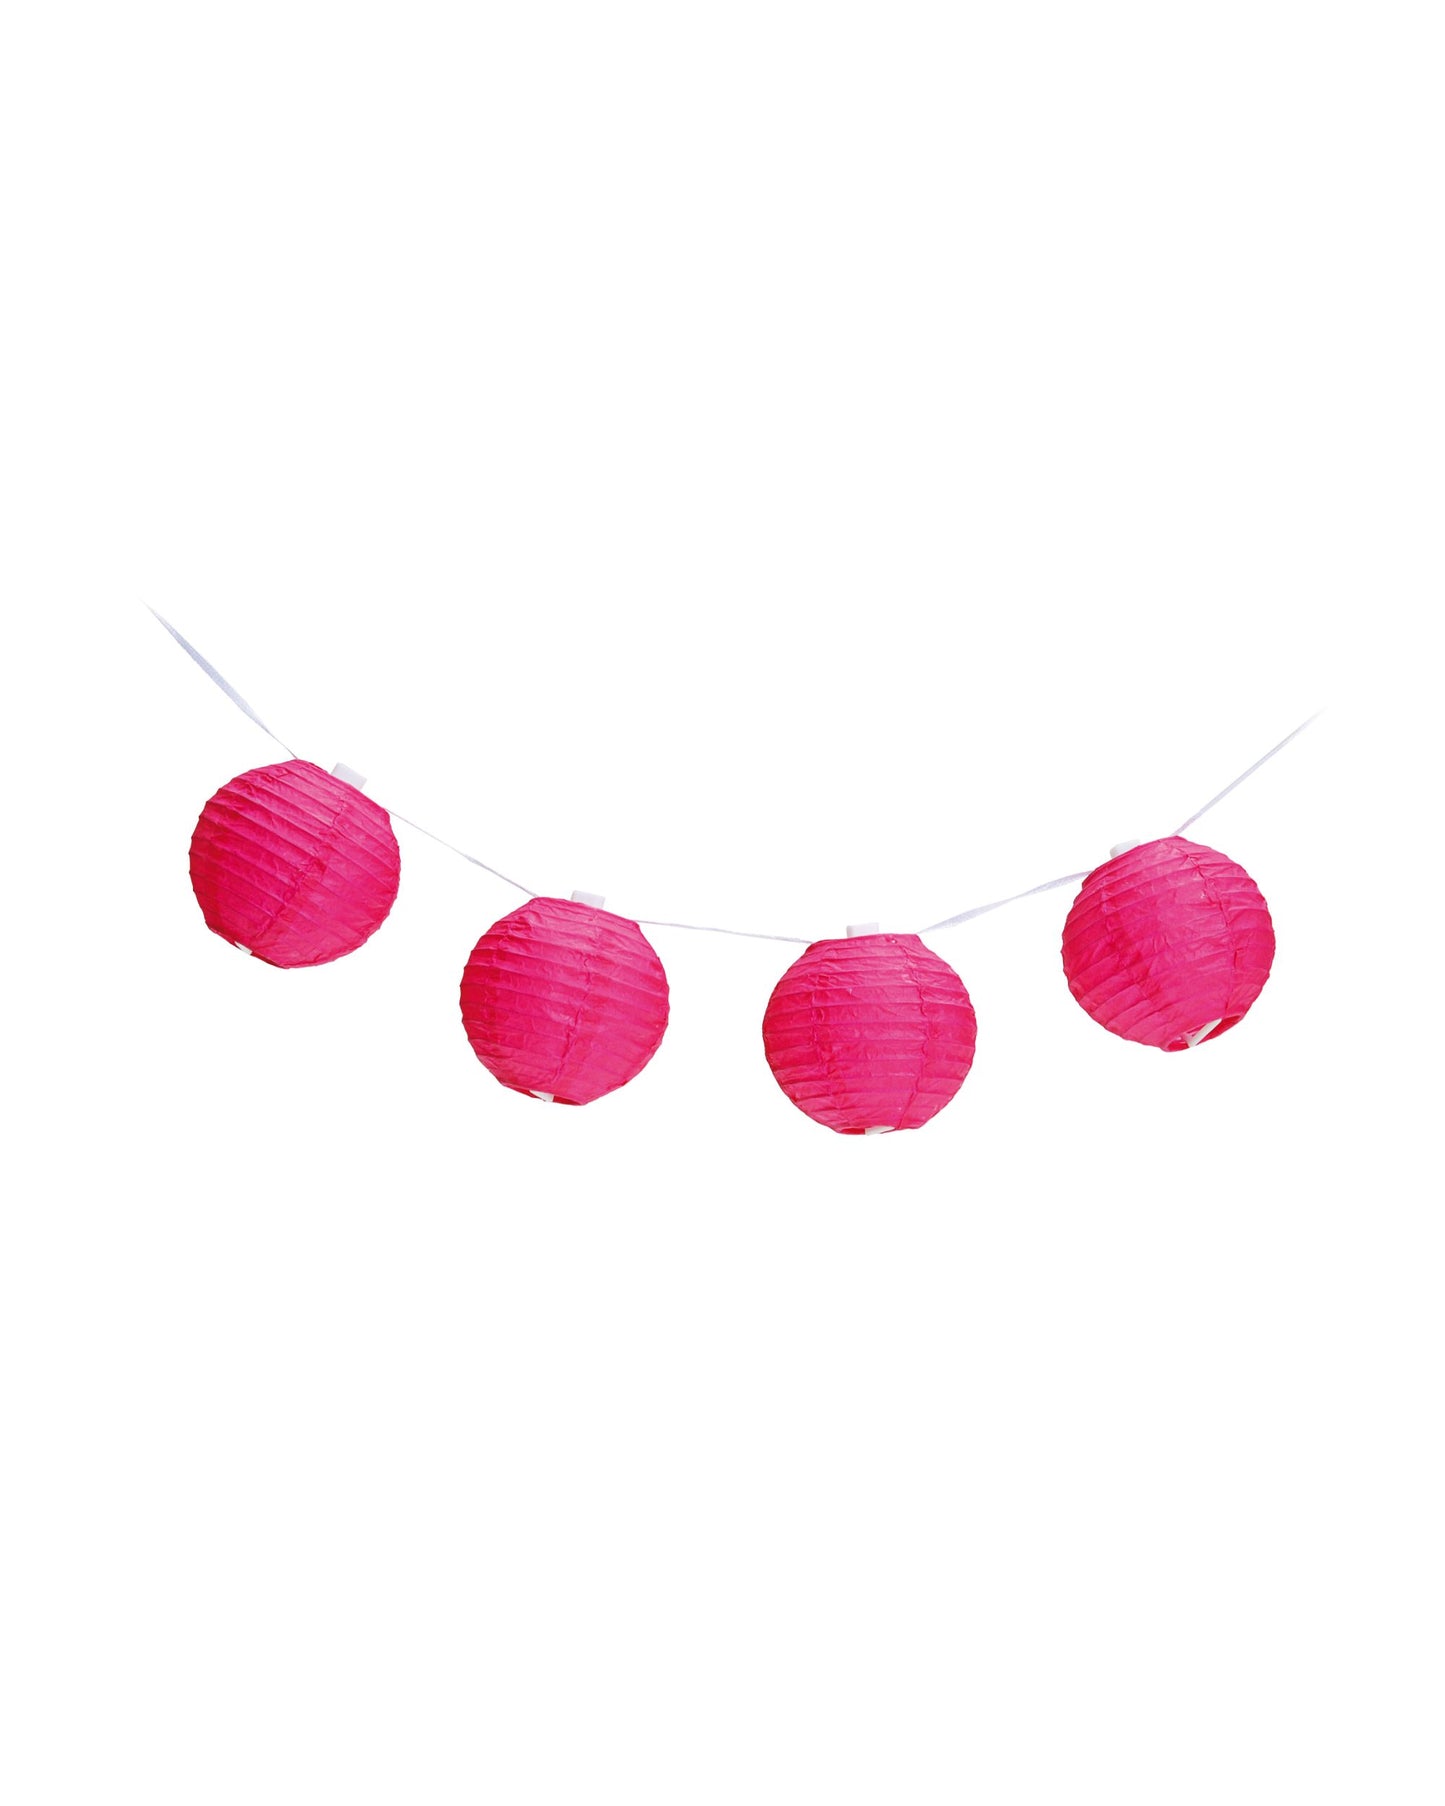 Varalzinho globos papel pink